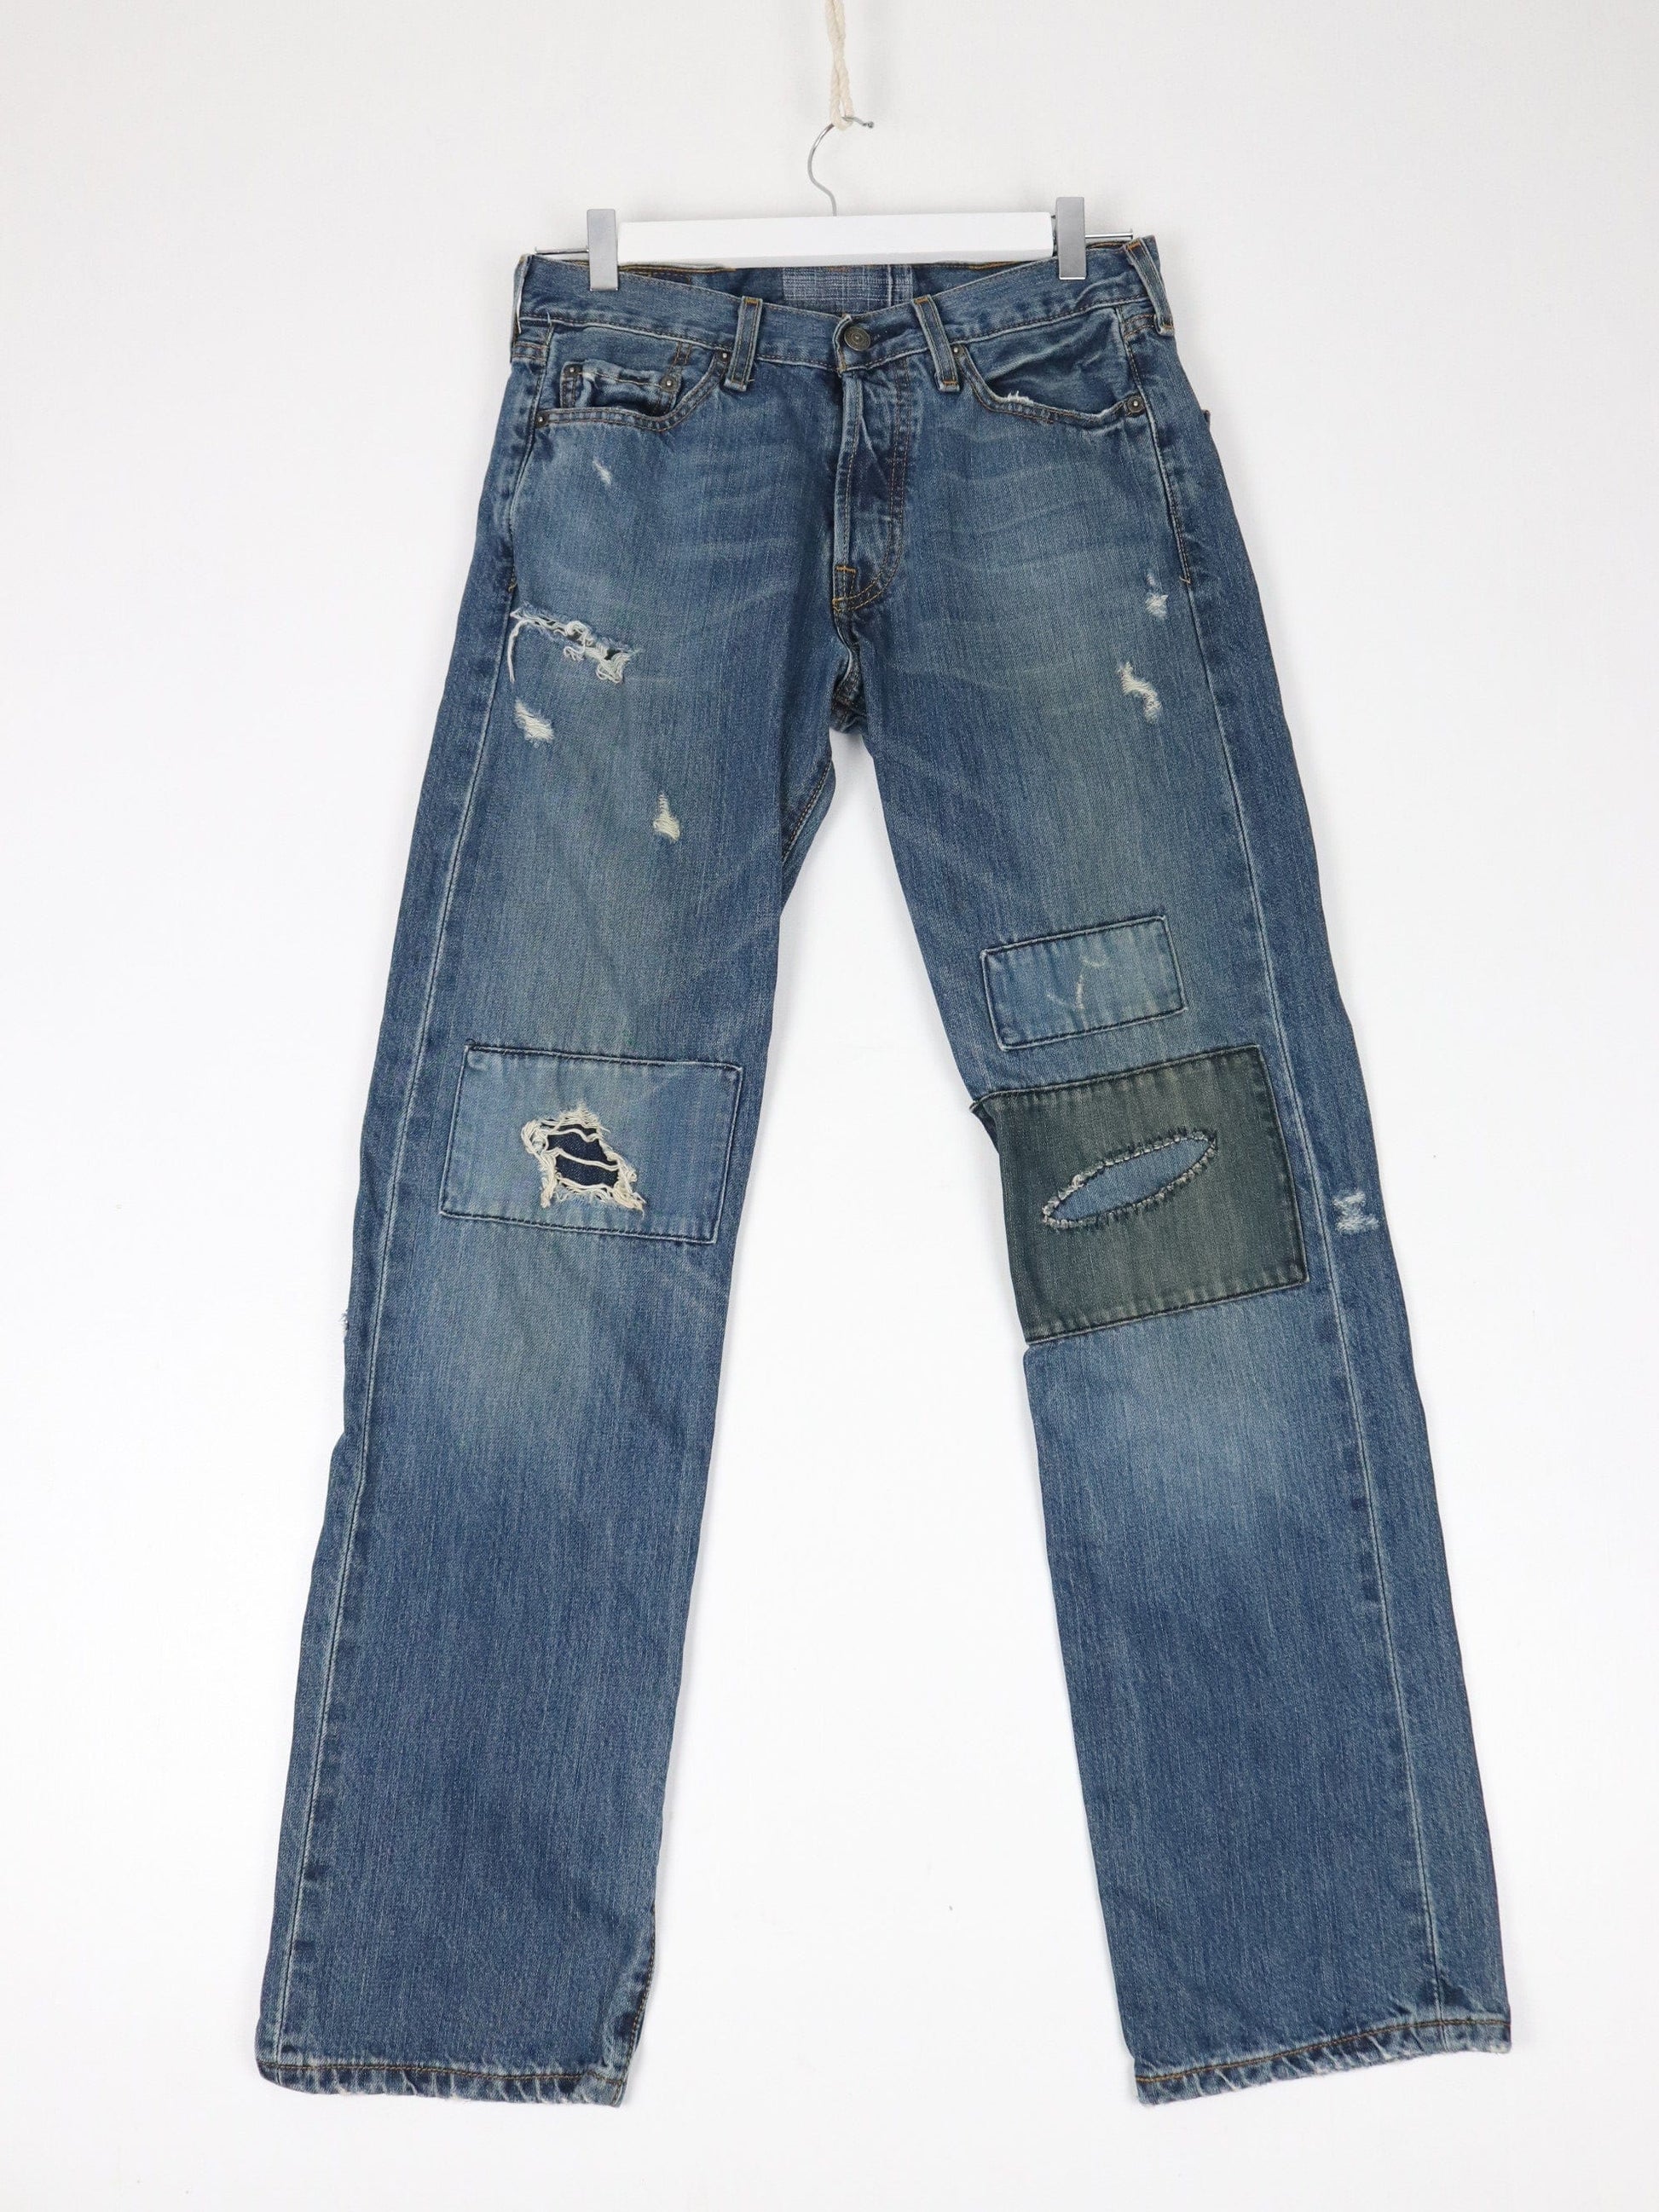 Levi's Jeans Levi's Pants Mens 30 x 31 Blue Denim Jeans Distressed